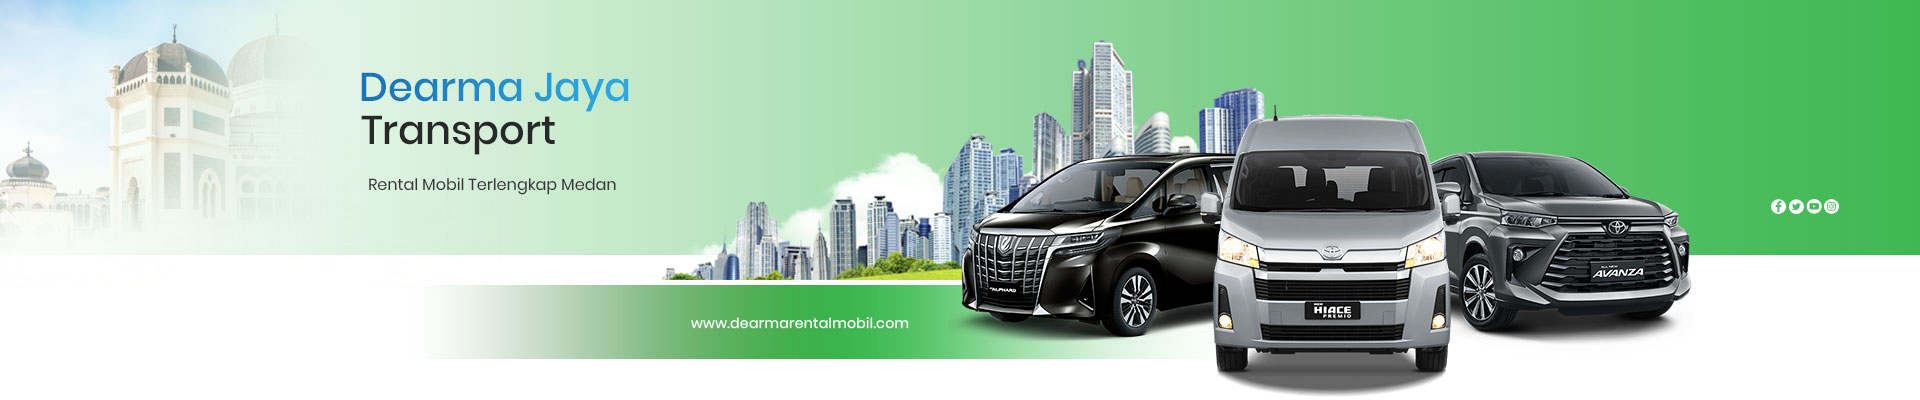 Dearma-Rental-Mobil-Medan-Title (1)